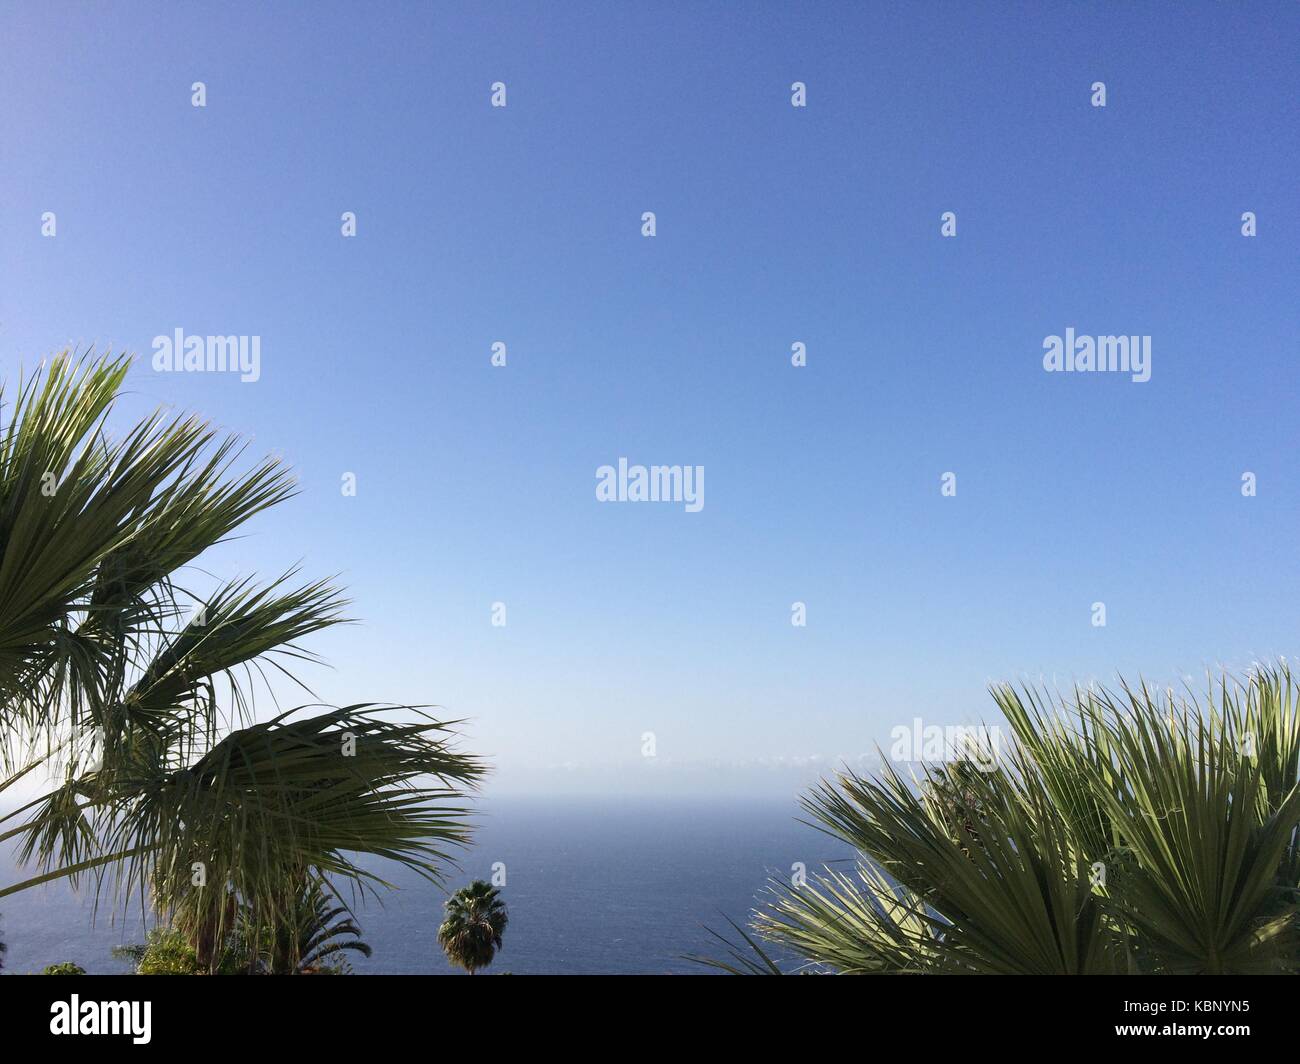 Océan, palmiers et ciel bleu - Fond d'été Banque D'Images